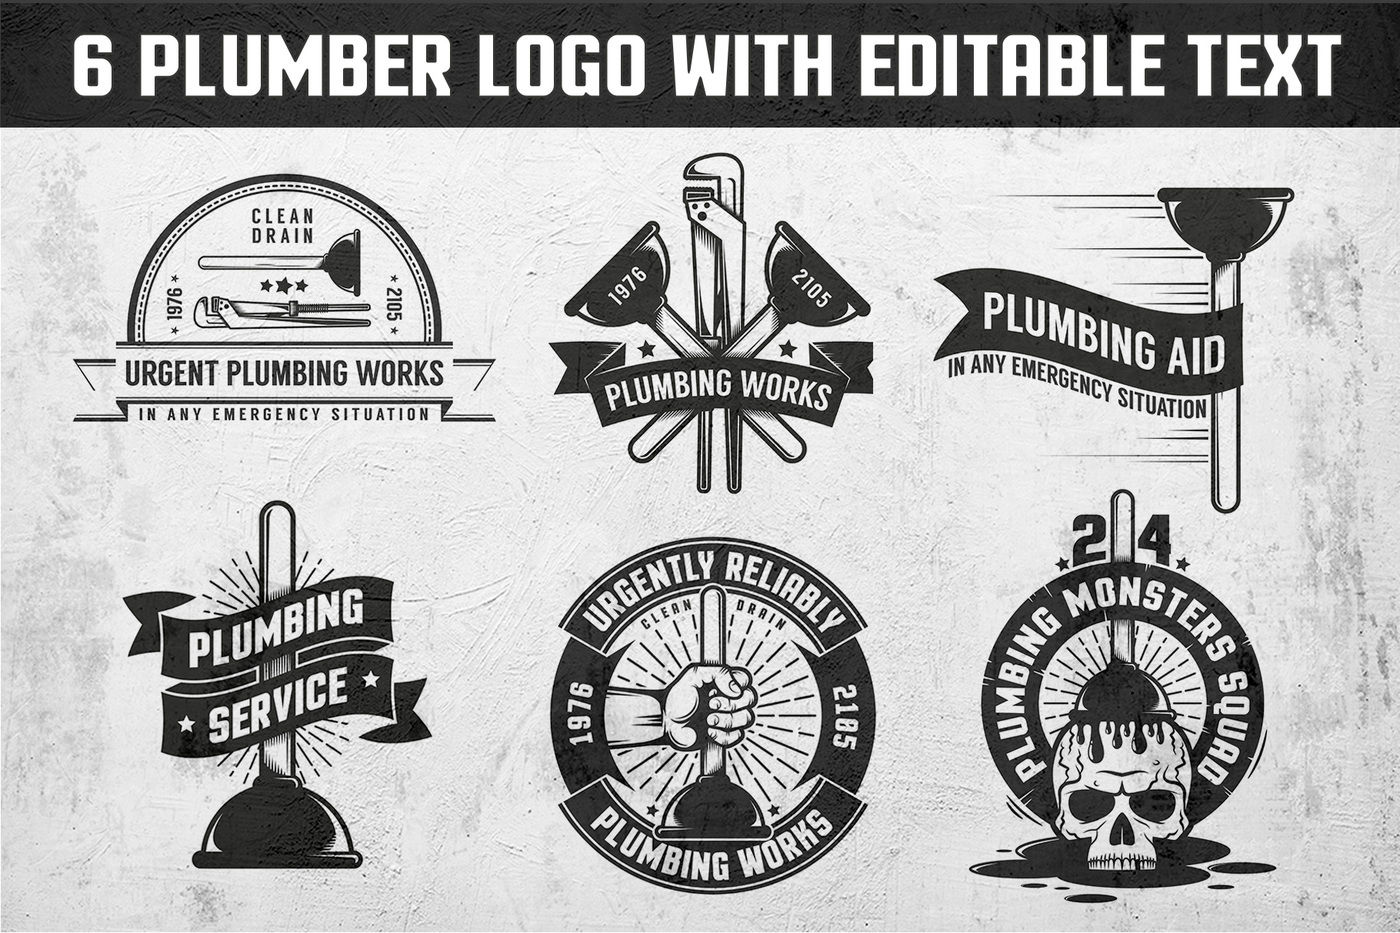 Plumbing retro logos By Agor2012 | TheHungryJPEG.com